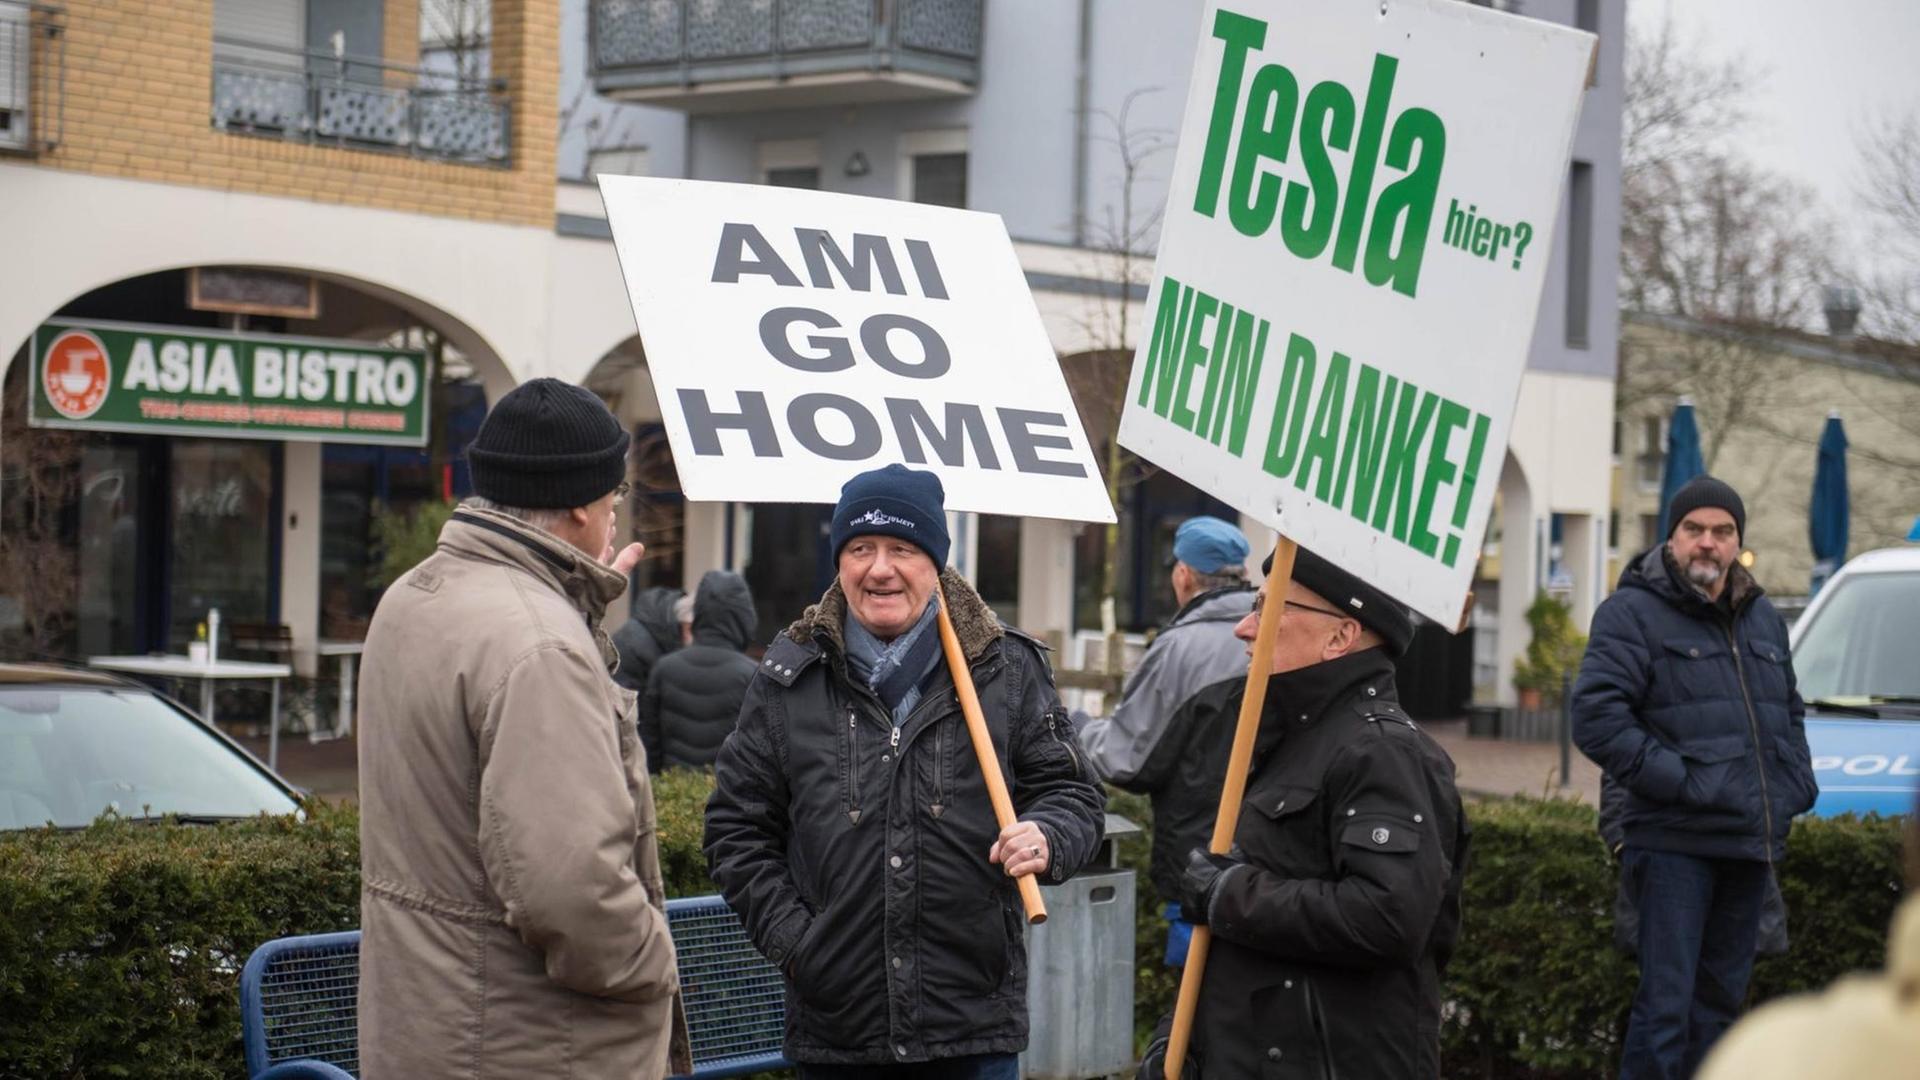 Auf der Straße stehen vier Männer, zwei von ihnen tragen Schilder, auf denen steht "Ami go home" und "Tesla nein danke"